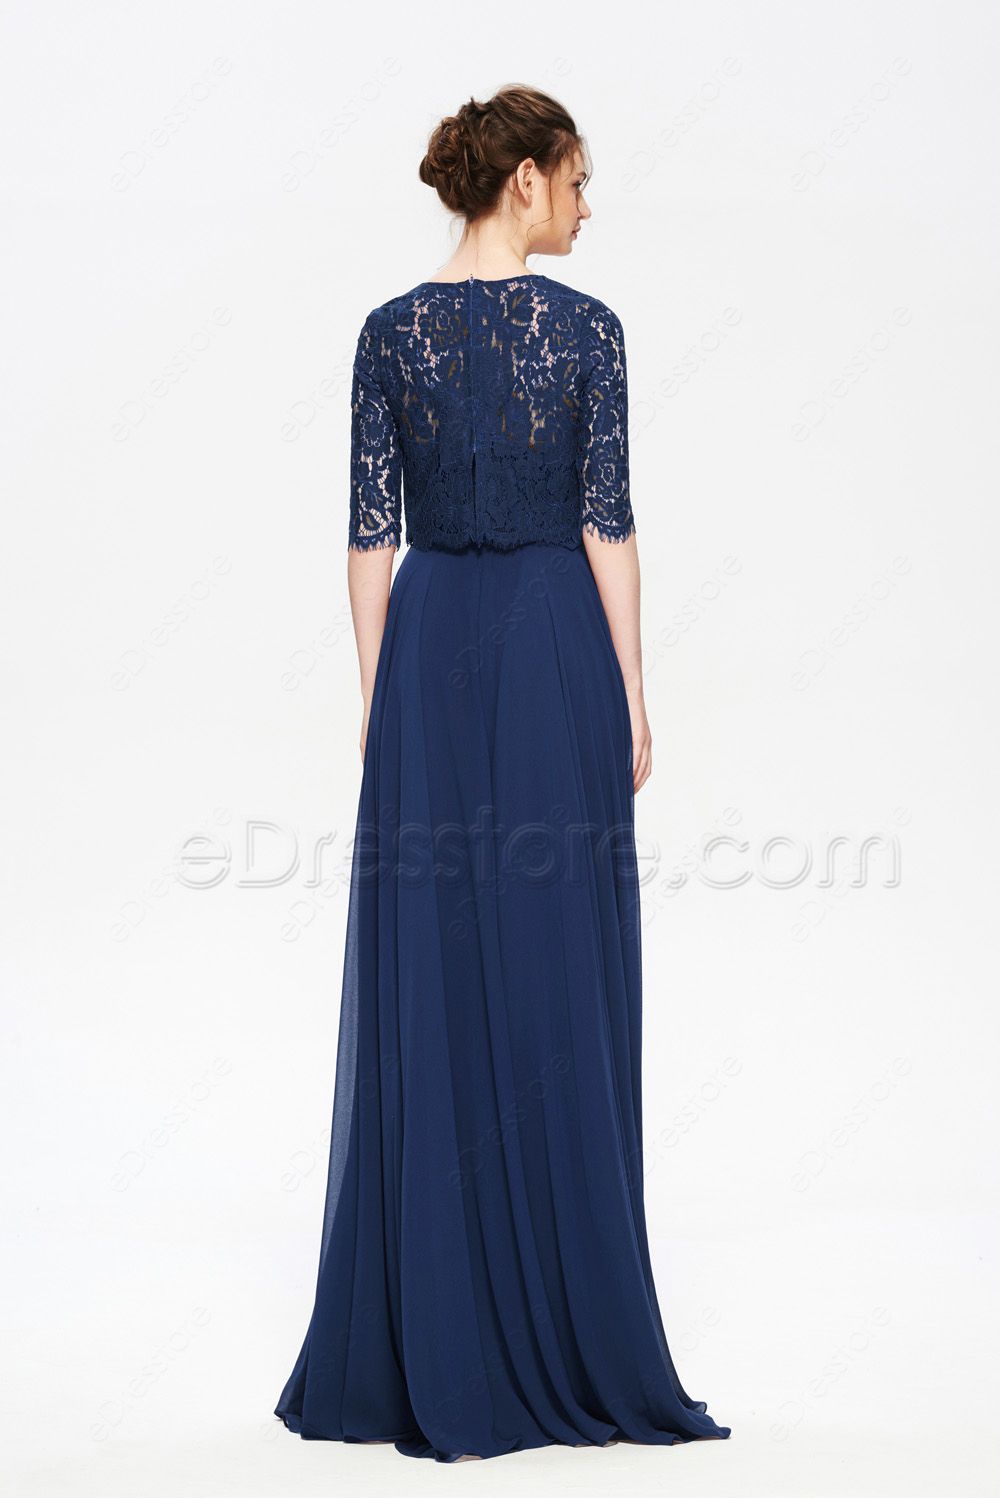 Navy Blue Modest Formal Dresses with Bolero | eDresstore